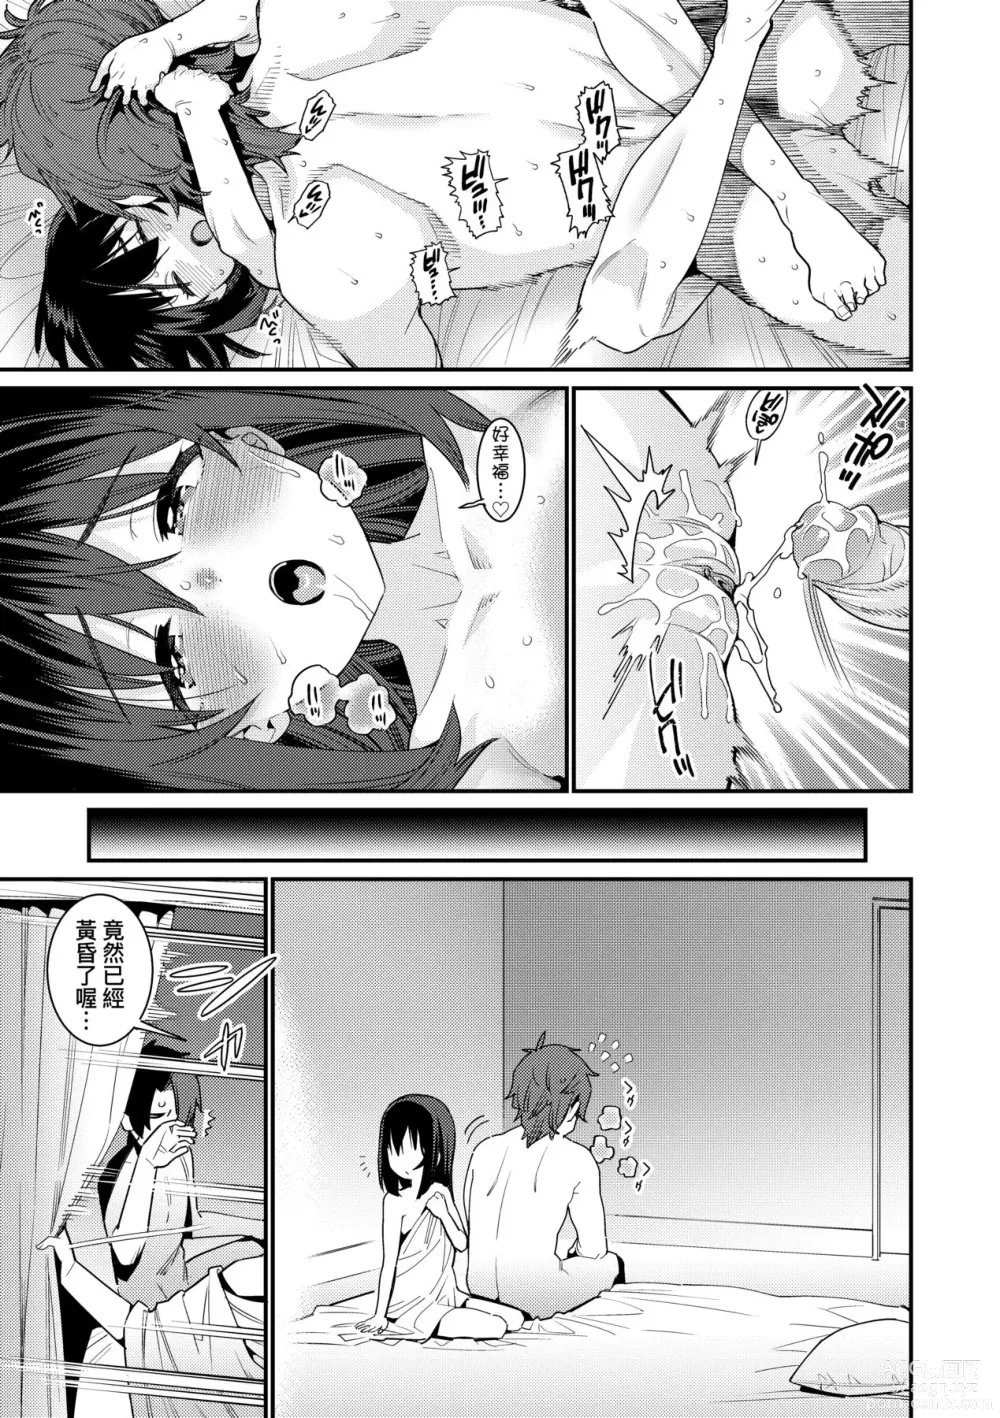 Page 210 of manga Itoshiki Wagaya (decensored)